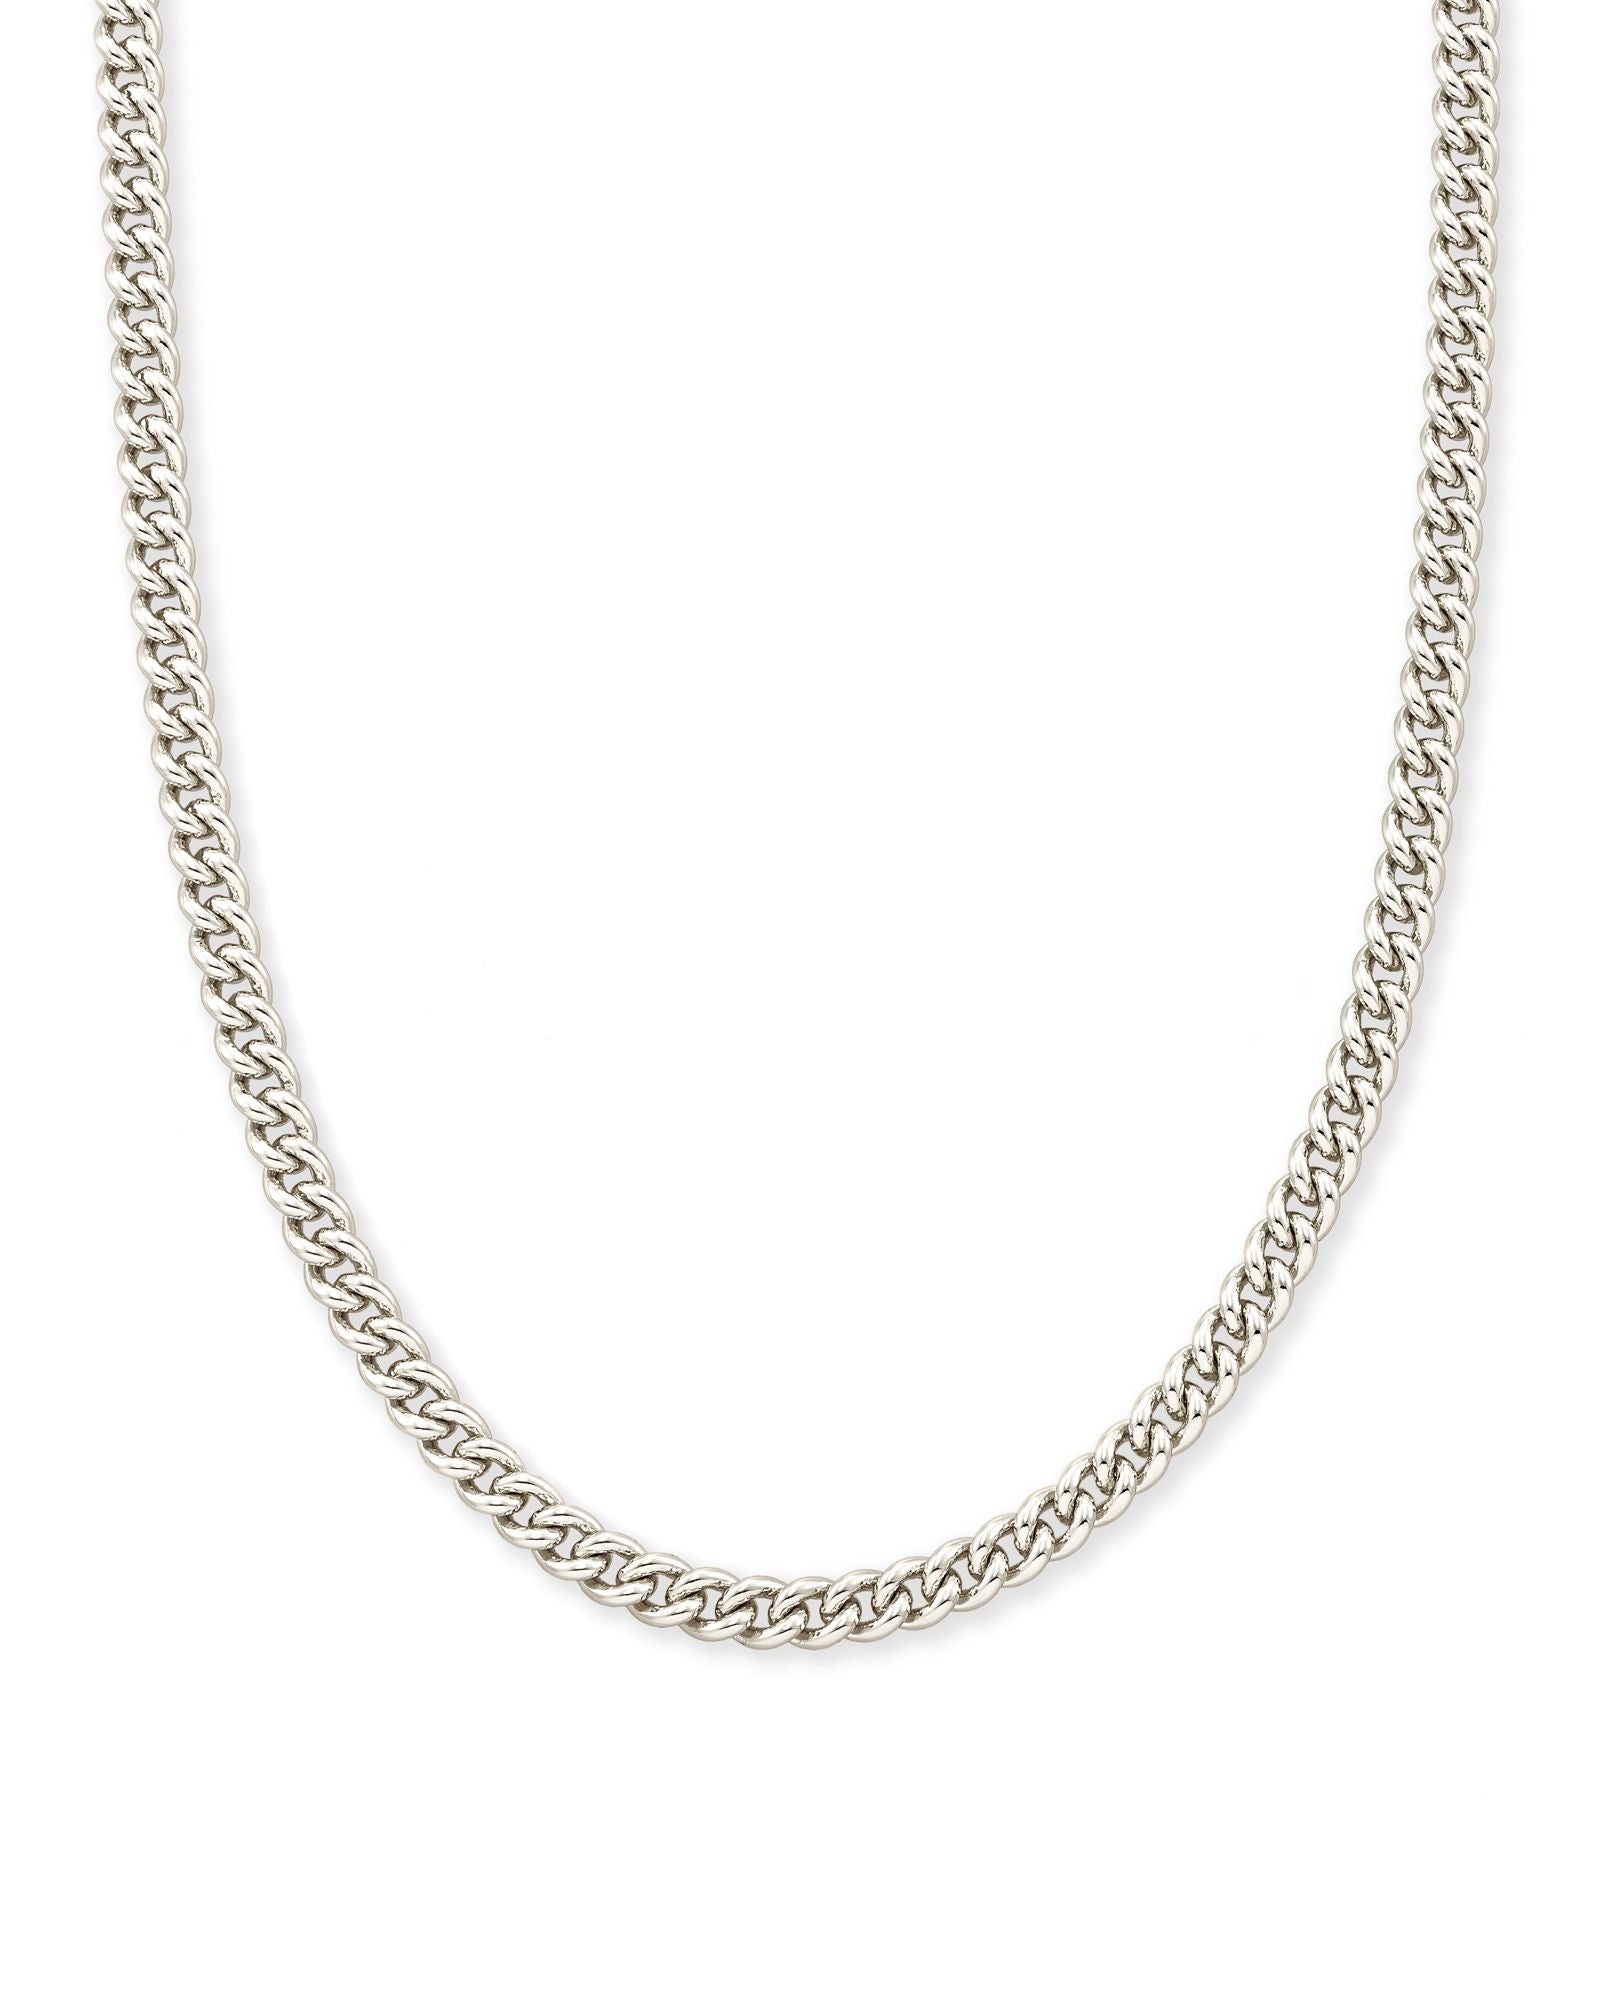 Ace Chain Necklace - Silver - Brazos Avenue Market 